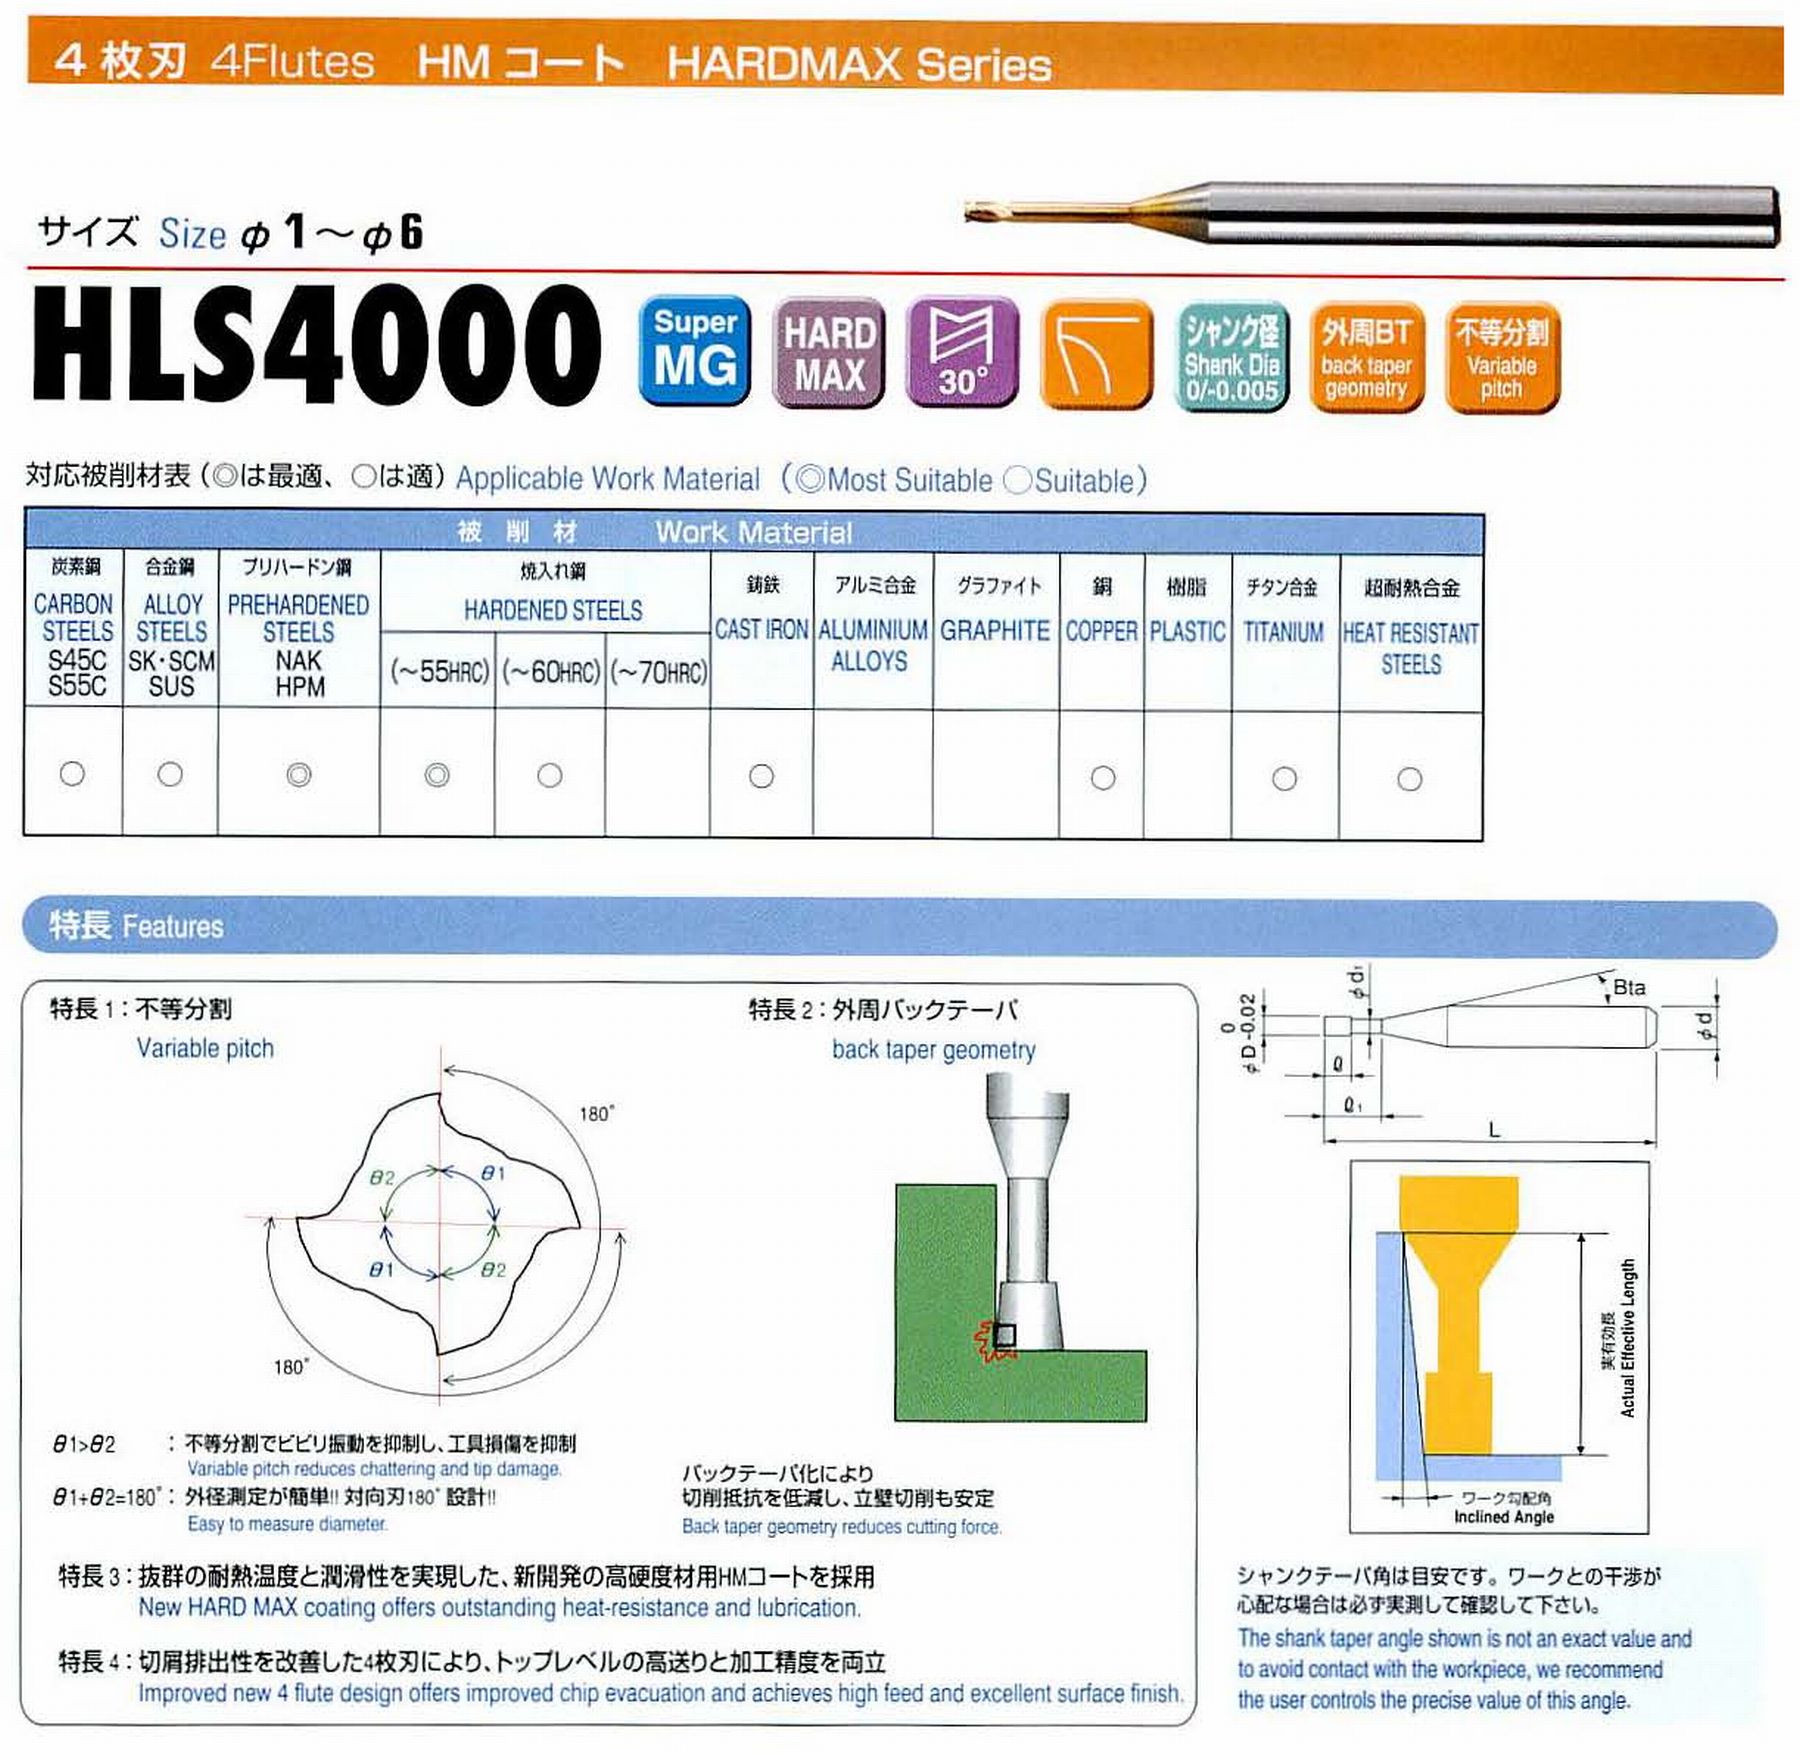 ユニオンツール 4枚刃 HLS4015-100 外径1.5 有効長10 刃長1.5 首径1.44 シャンクテーパ角16° 全長50 シャンク径4